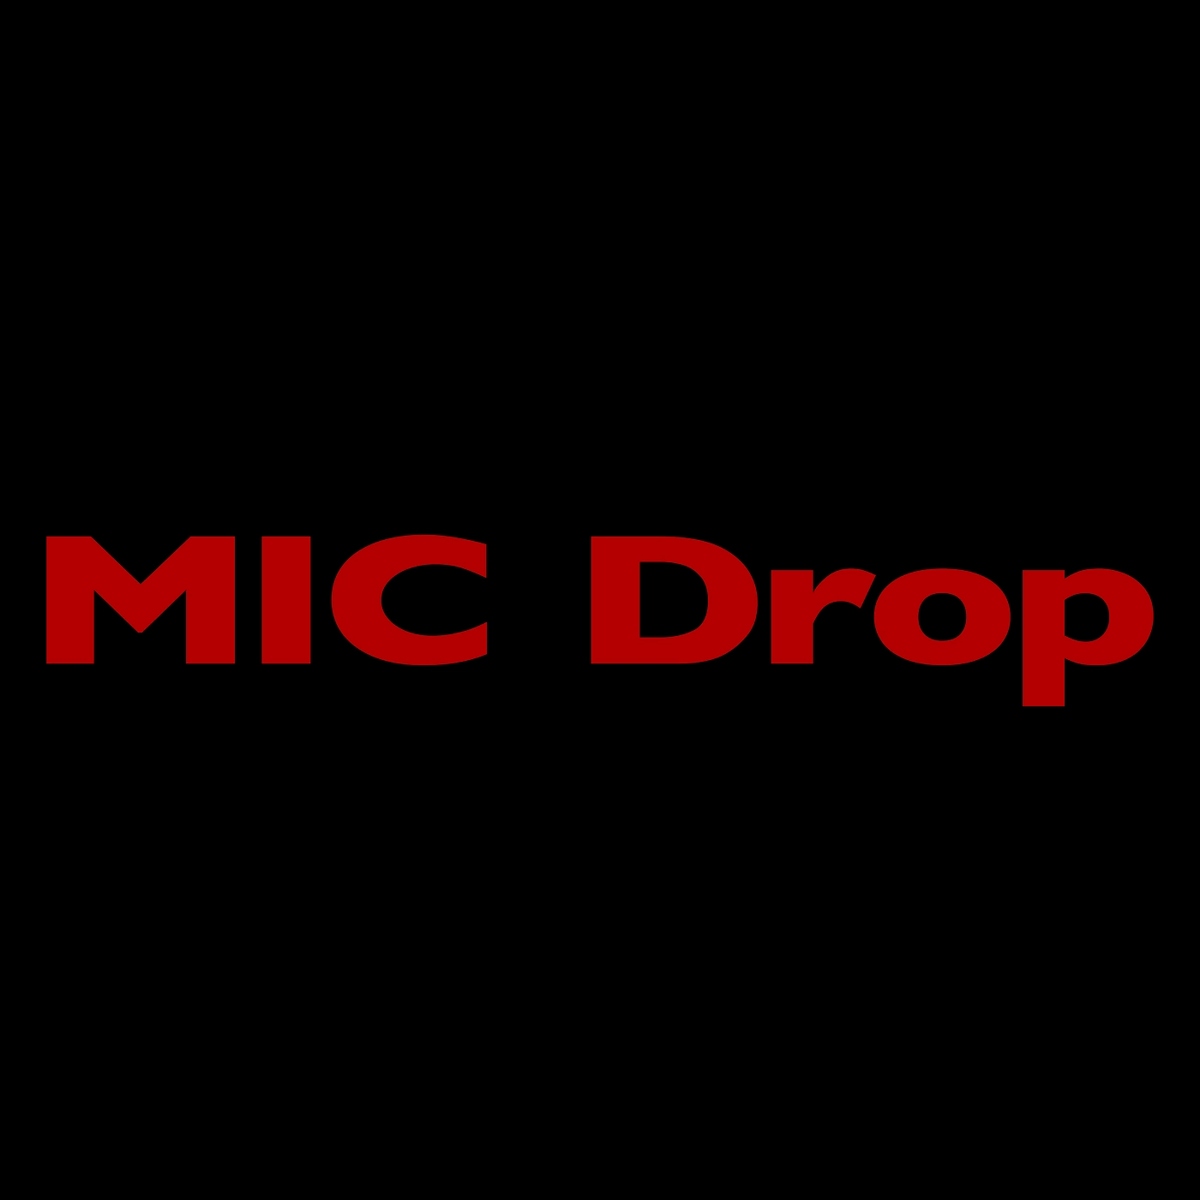 Песня bts mic drop. BTS Mic Drop Steve Aoki Remix. Mic Drop Steve Aoki Remix. Mic Drop BTS альбом. БТС Mic Drop Steve Aoki.